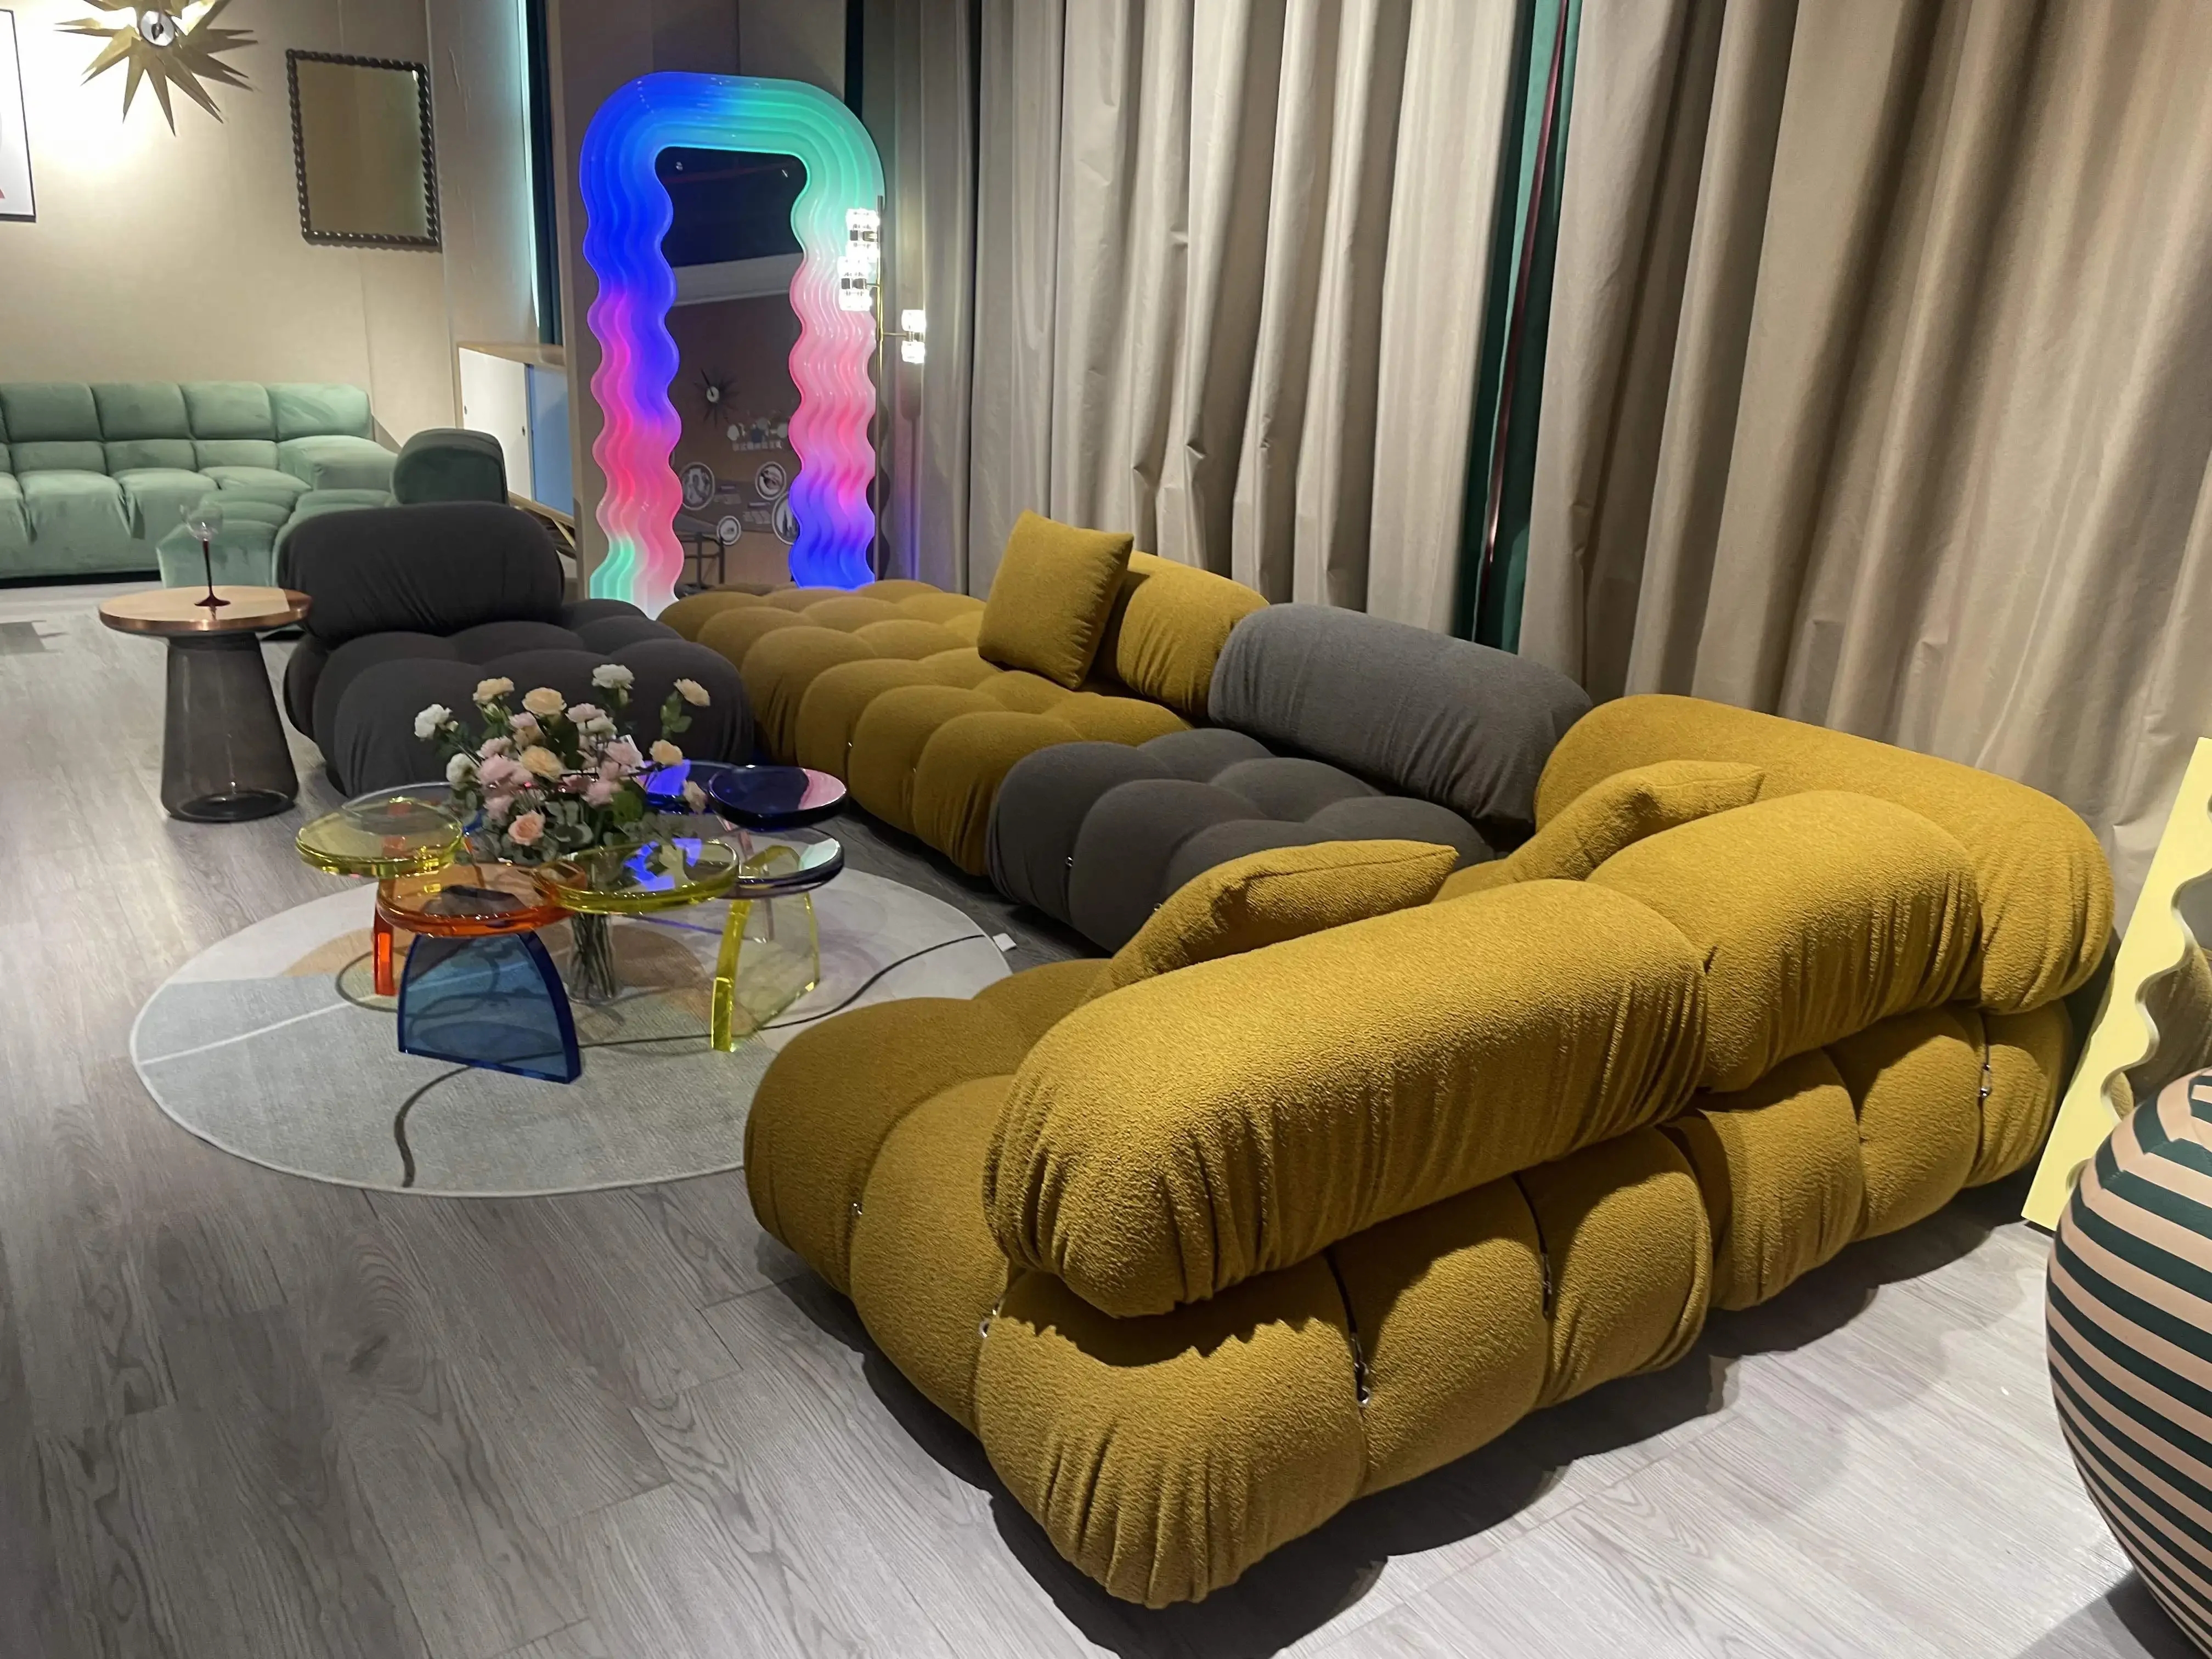 Come custodire il divano moderno?